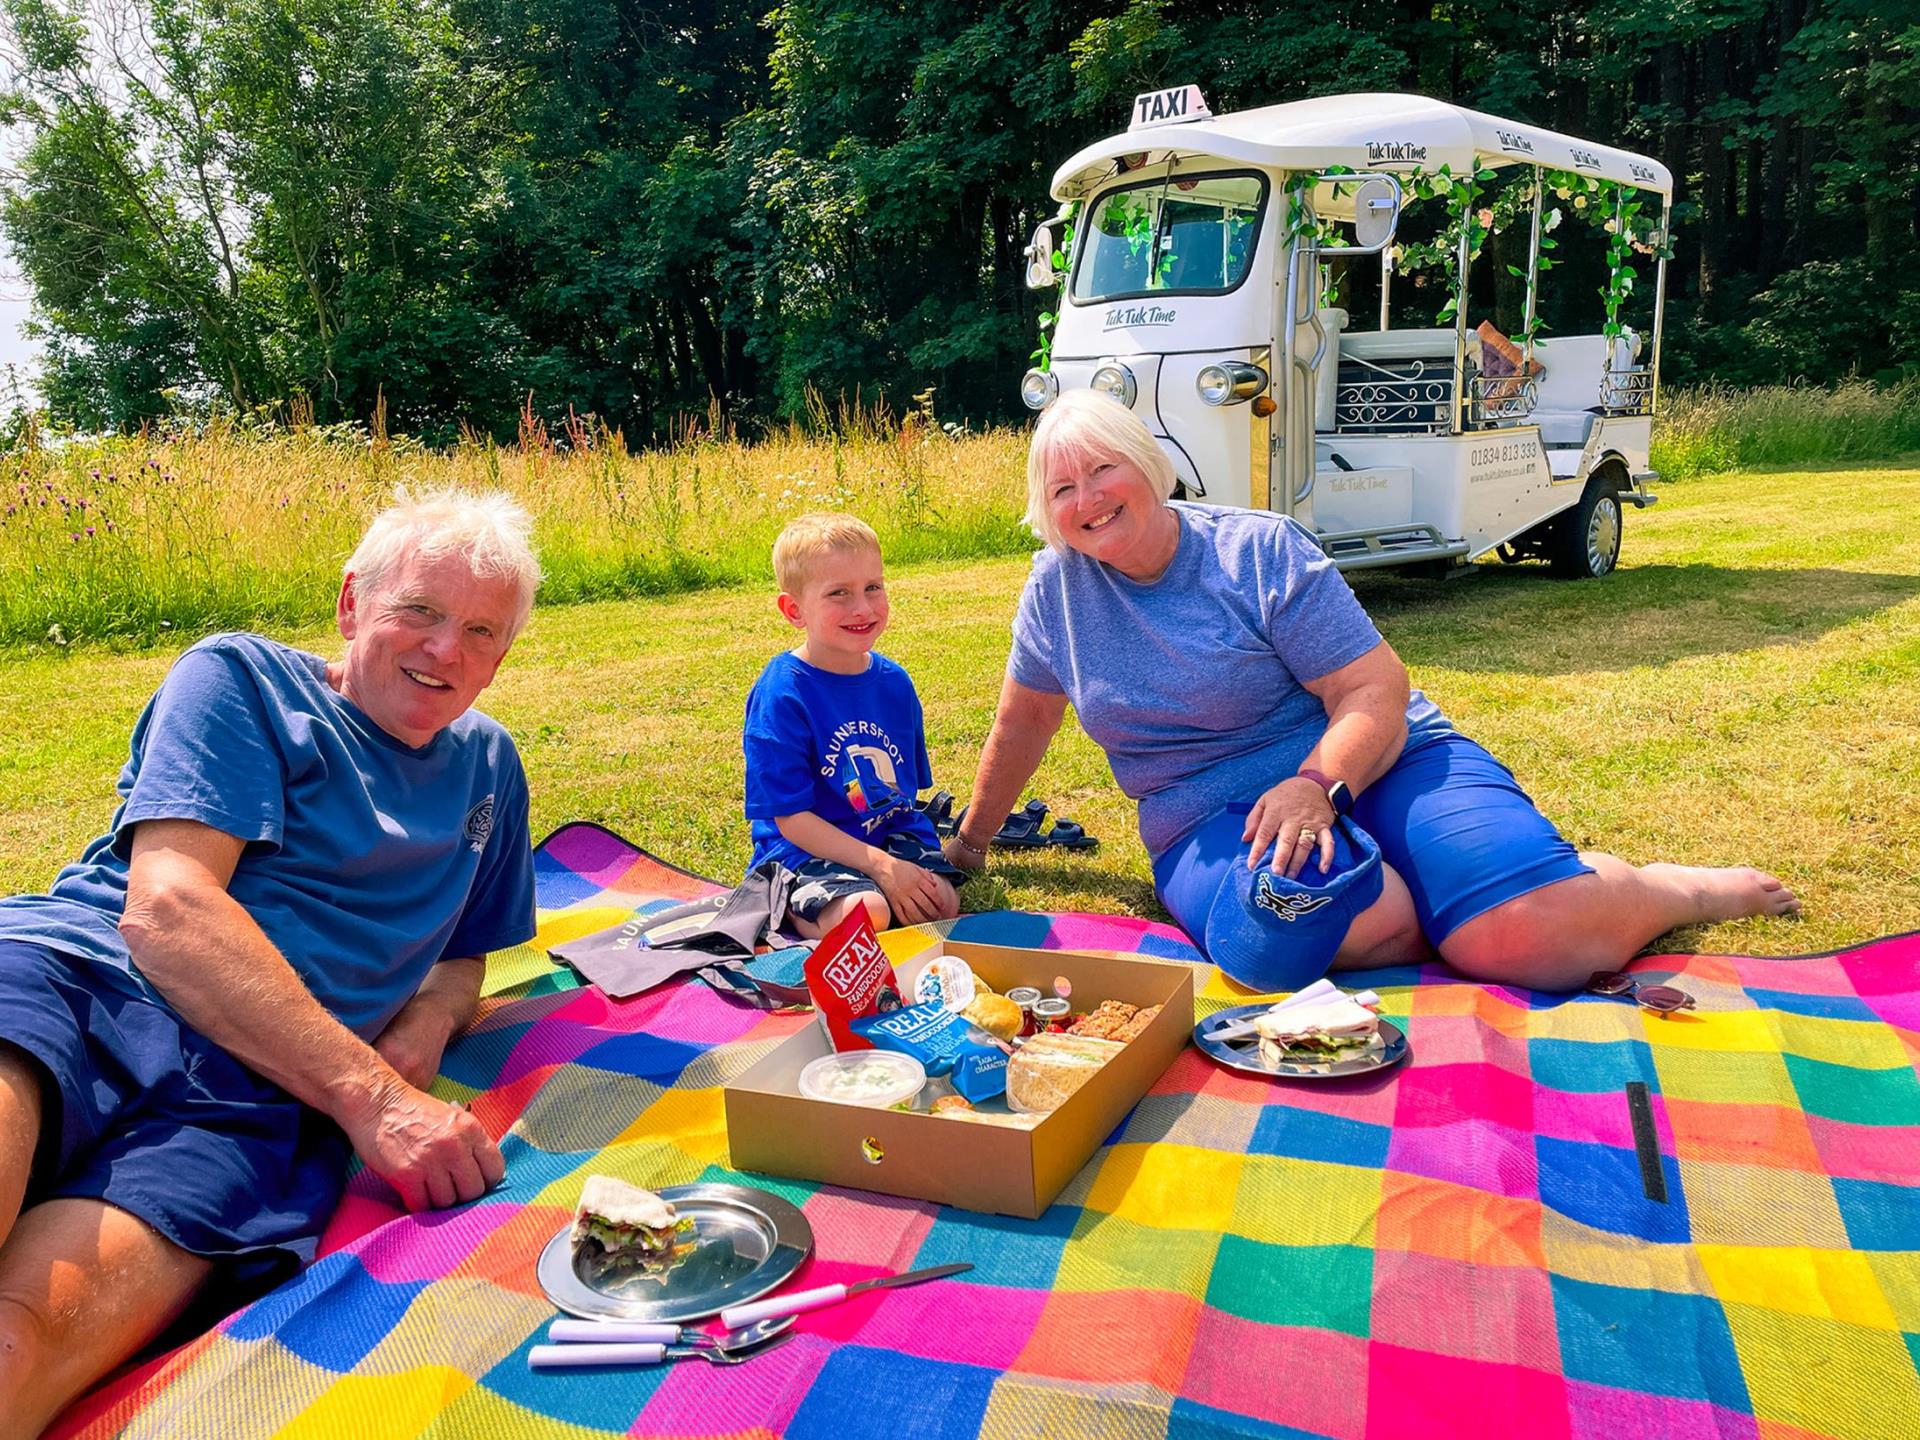 A wonderful tuk tuk picnic tour